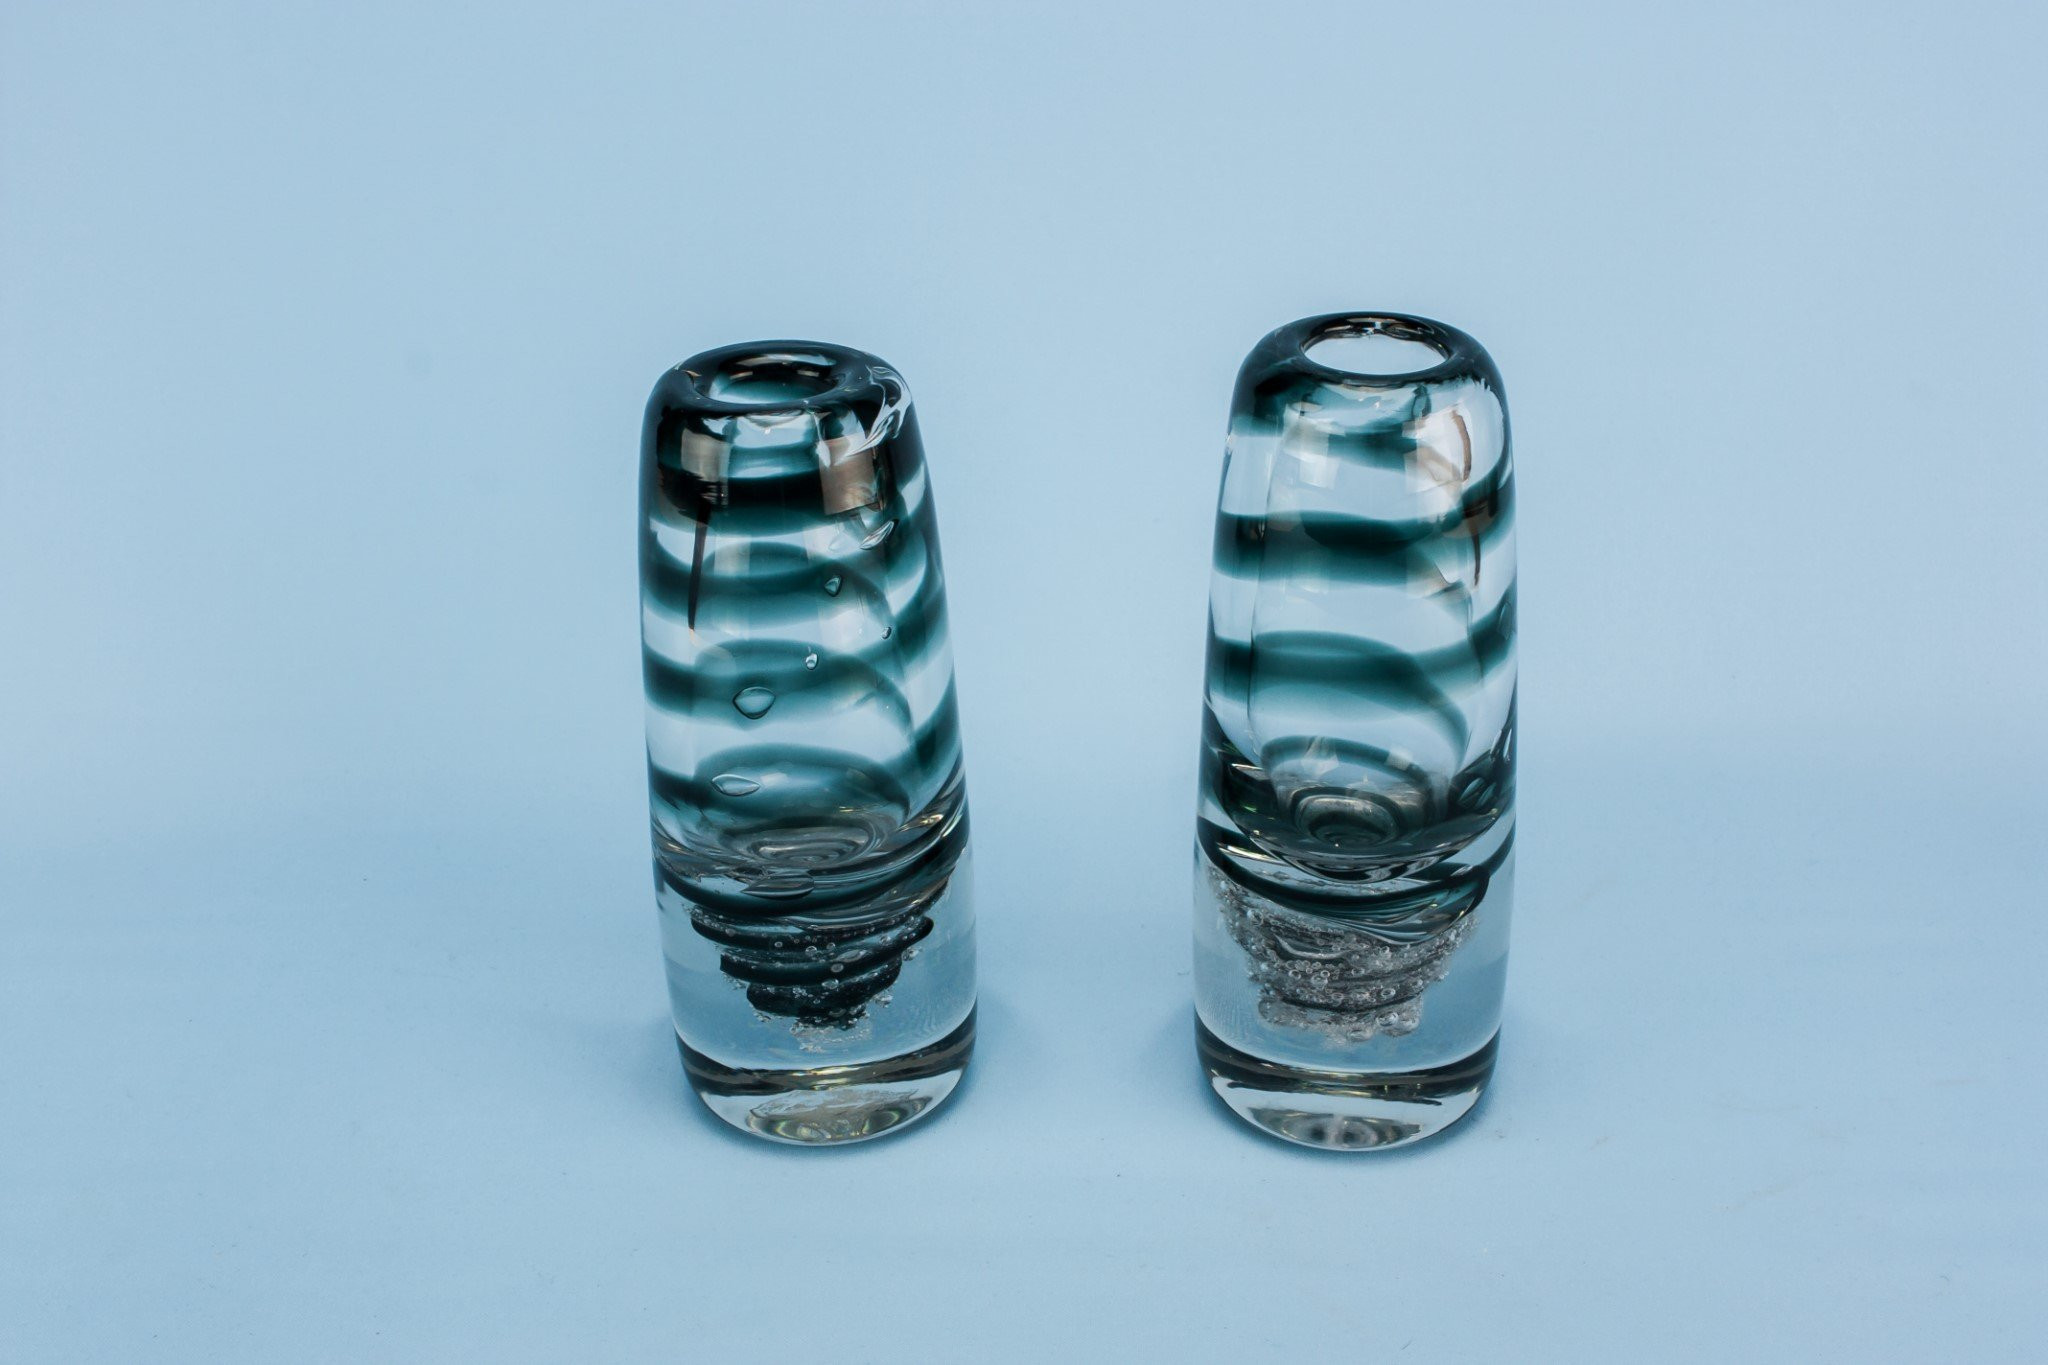 21 Lovable Mini Colored Glass Vases 2024 free download mini colored glass vases of 17 fresh antique blue glass vases bogekompresorturkiye com with 2 glass vases